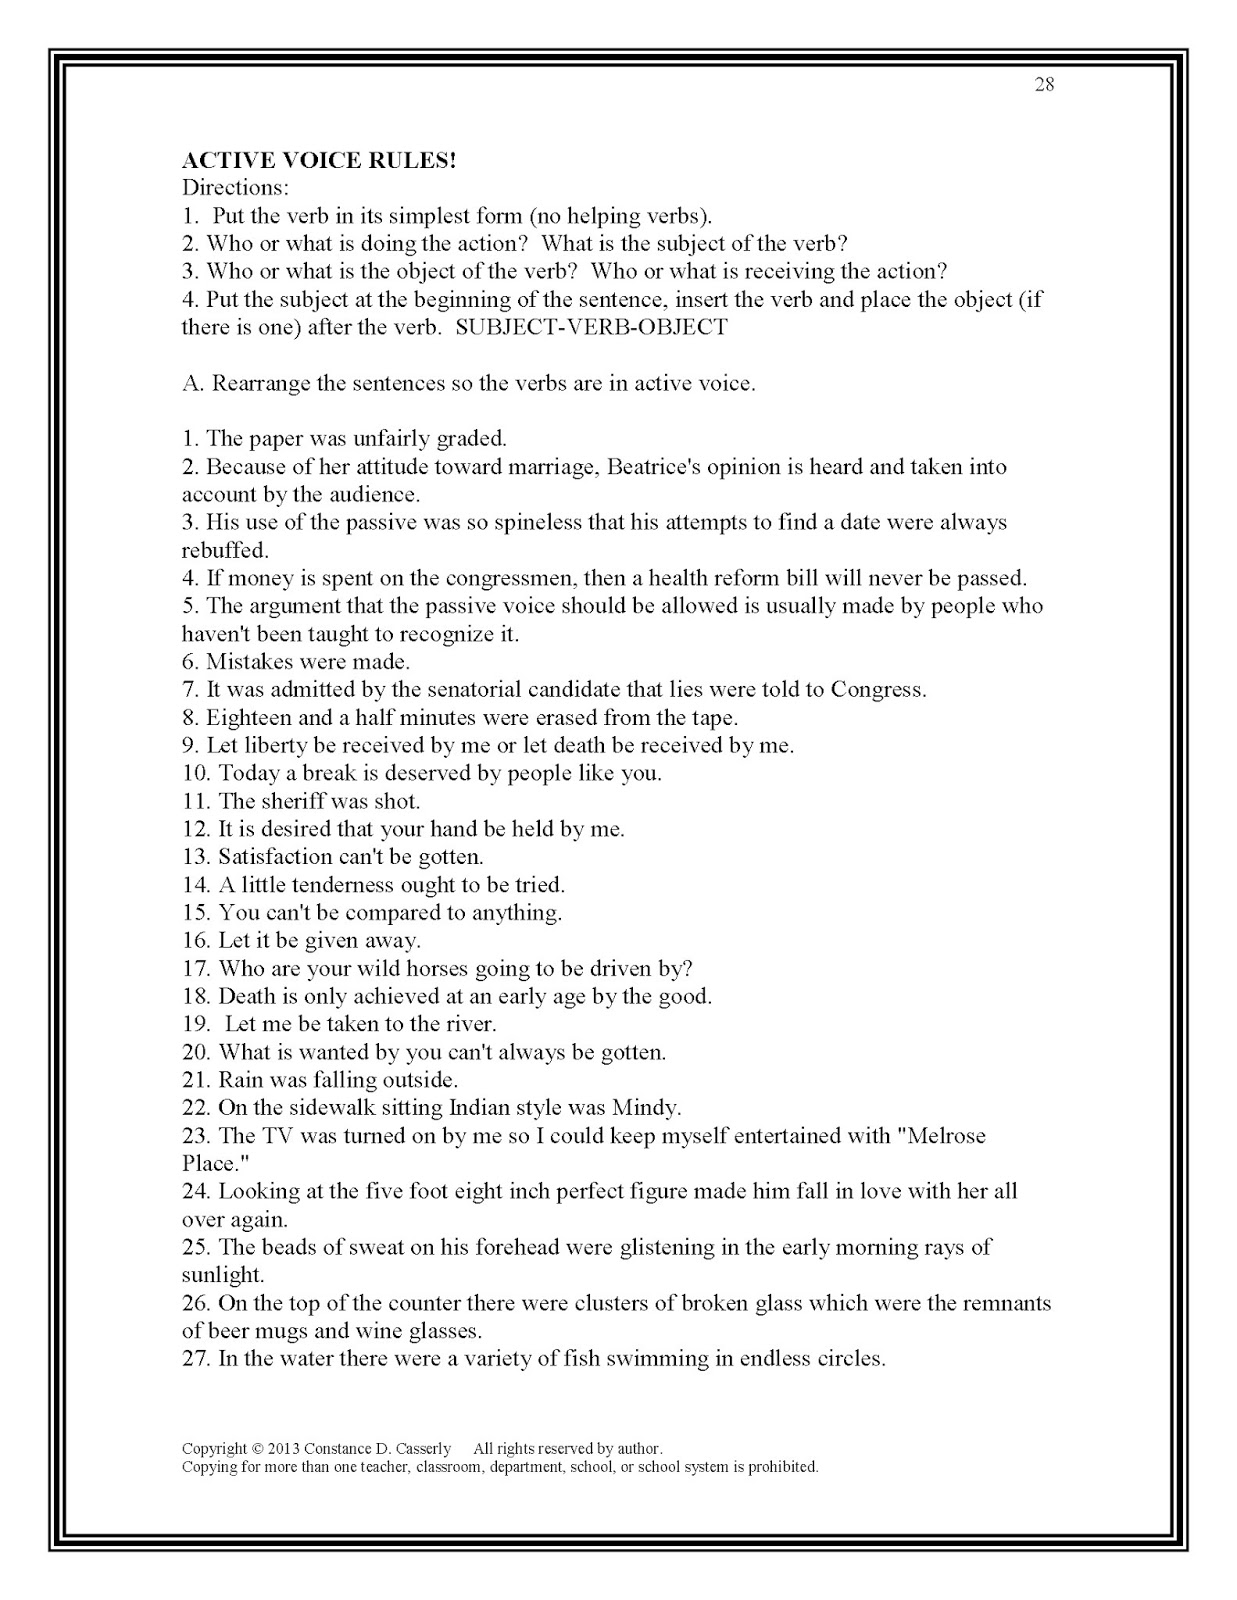 Grammar Worksheets Middle School Image